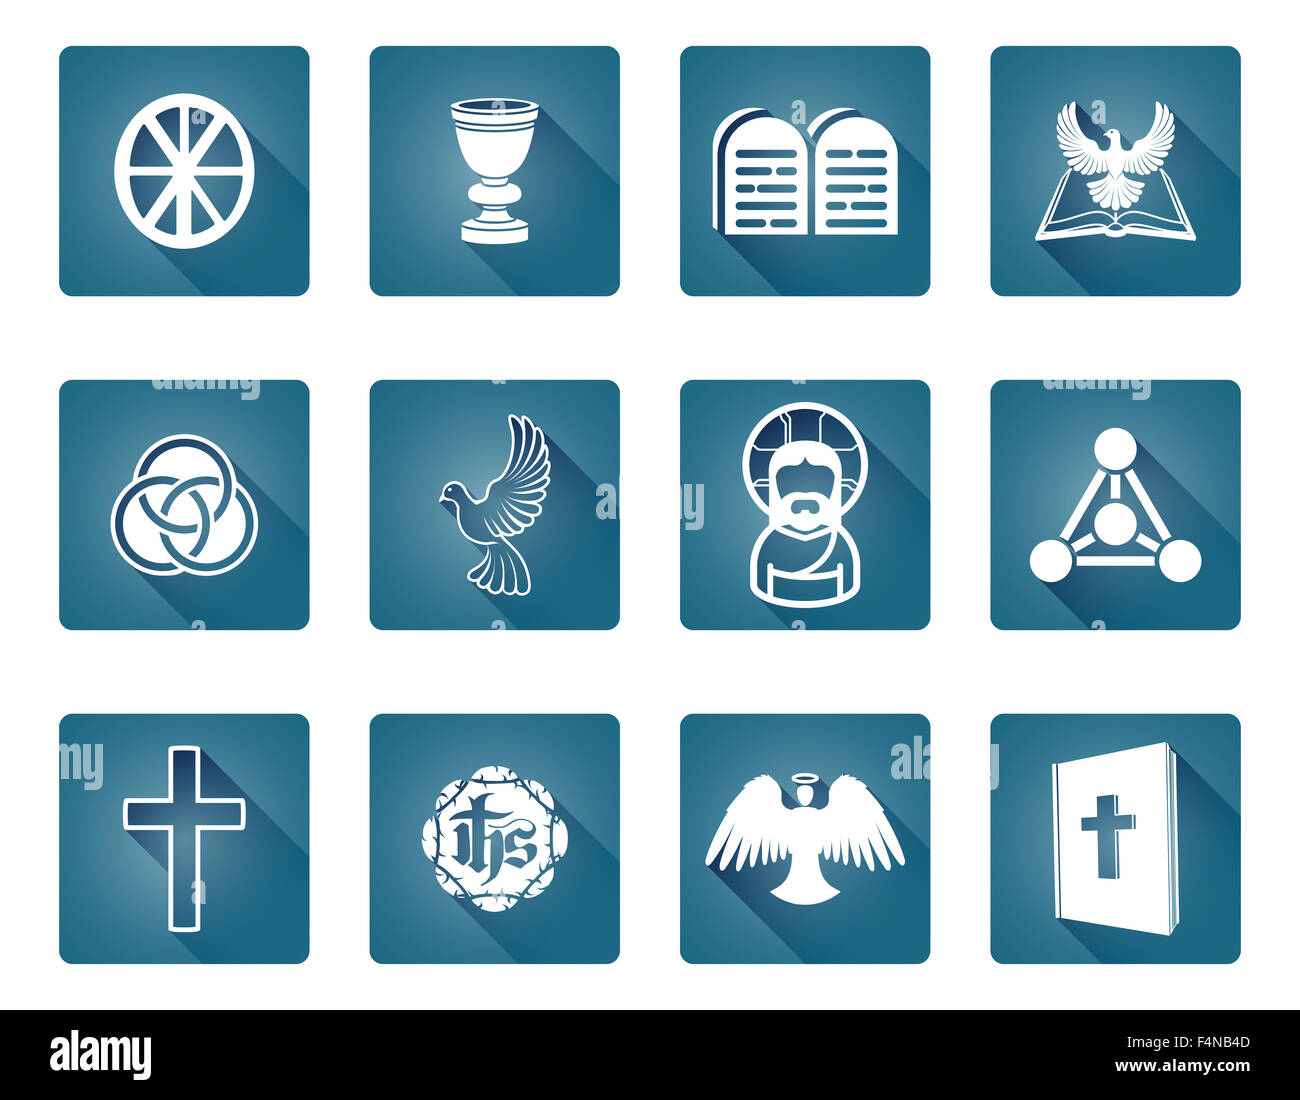 Un conjunto de iconos y símbolos religiosos cristianos Foto de stock